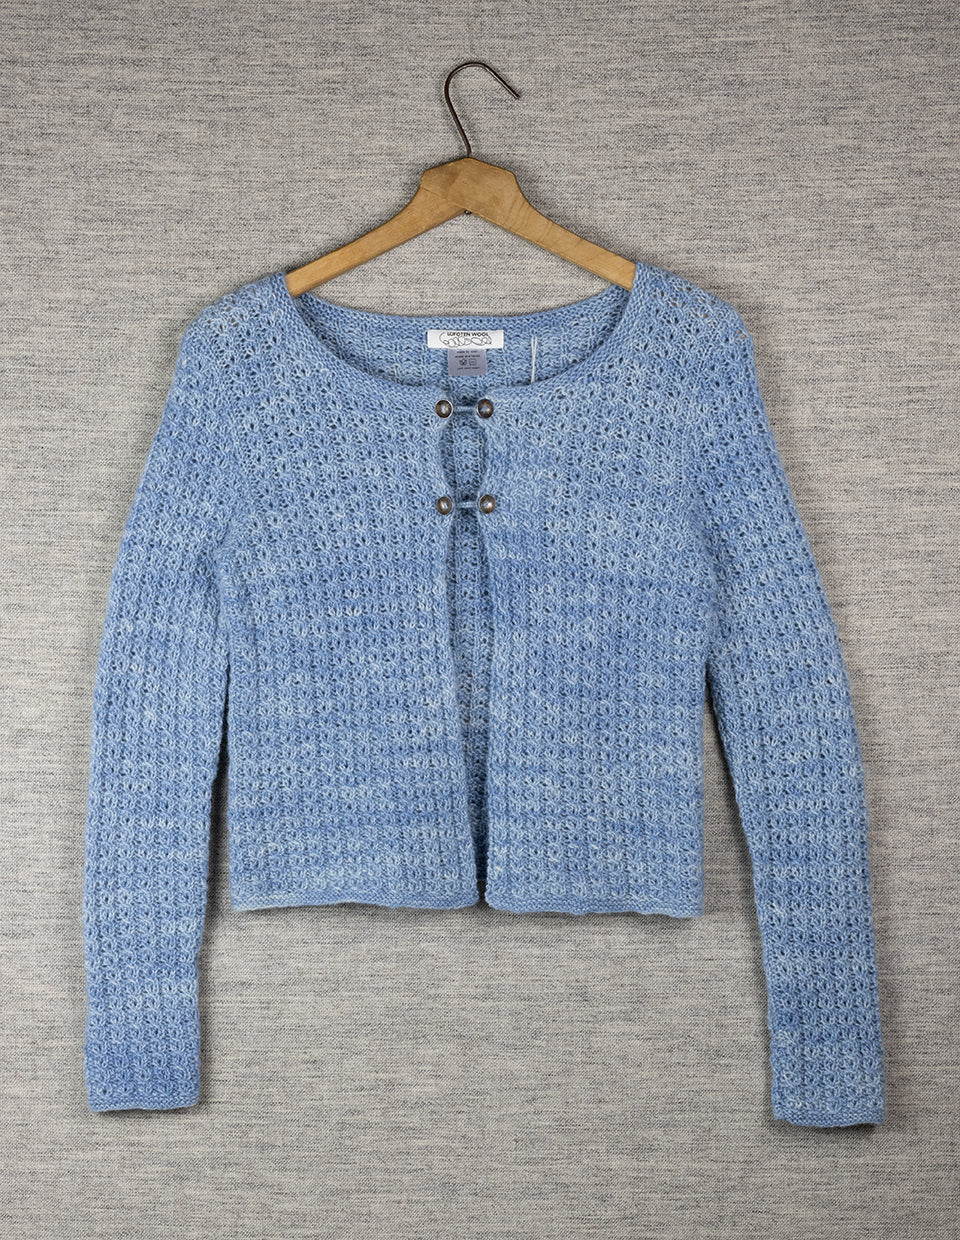 “Tauverk” braid cardigan, knitting kit